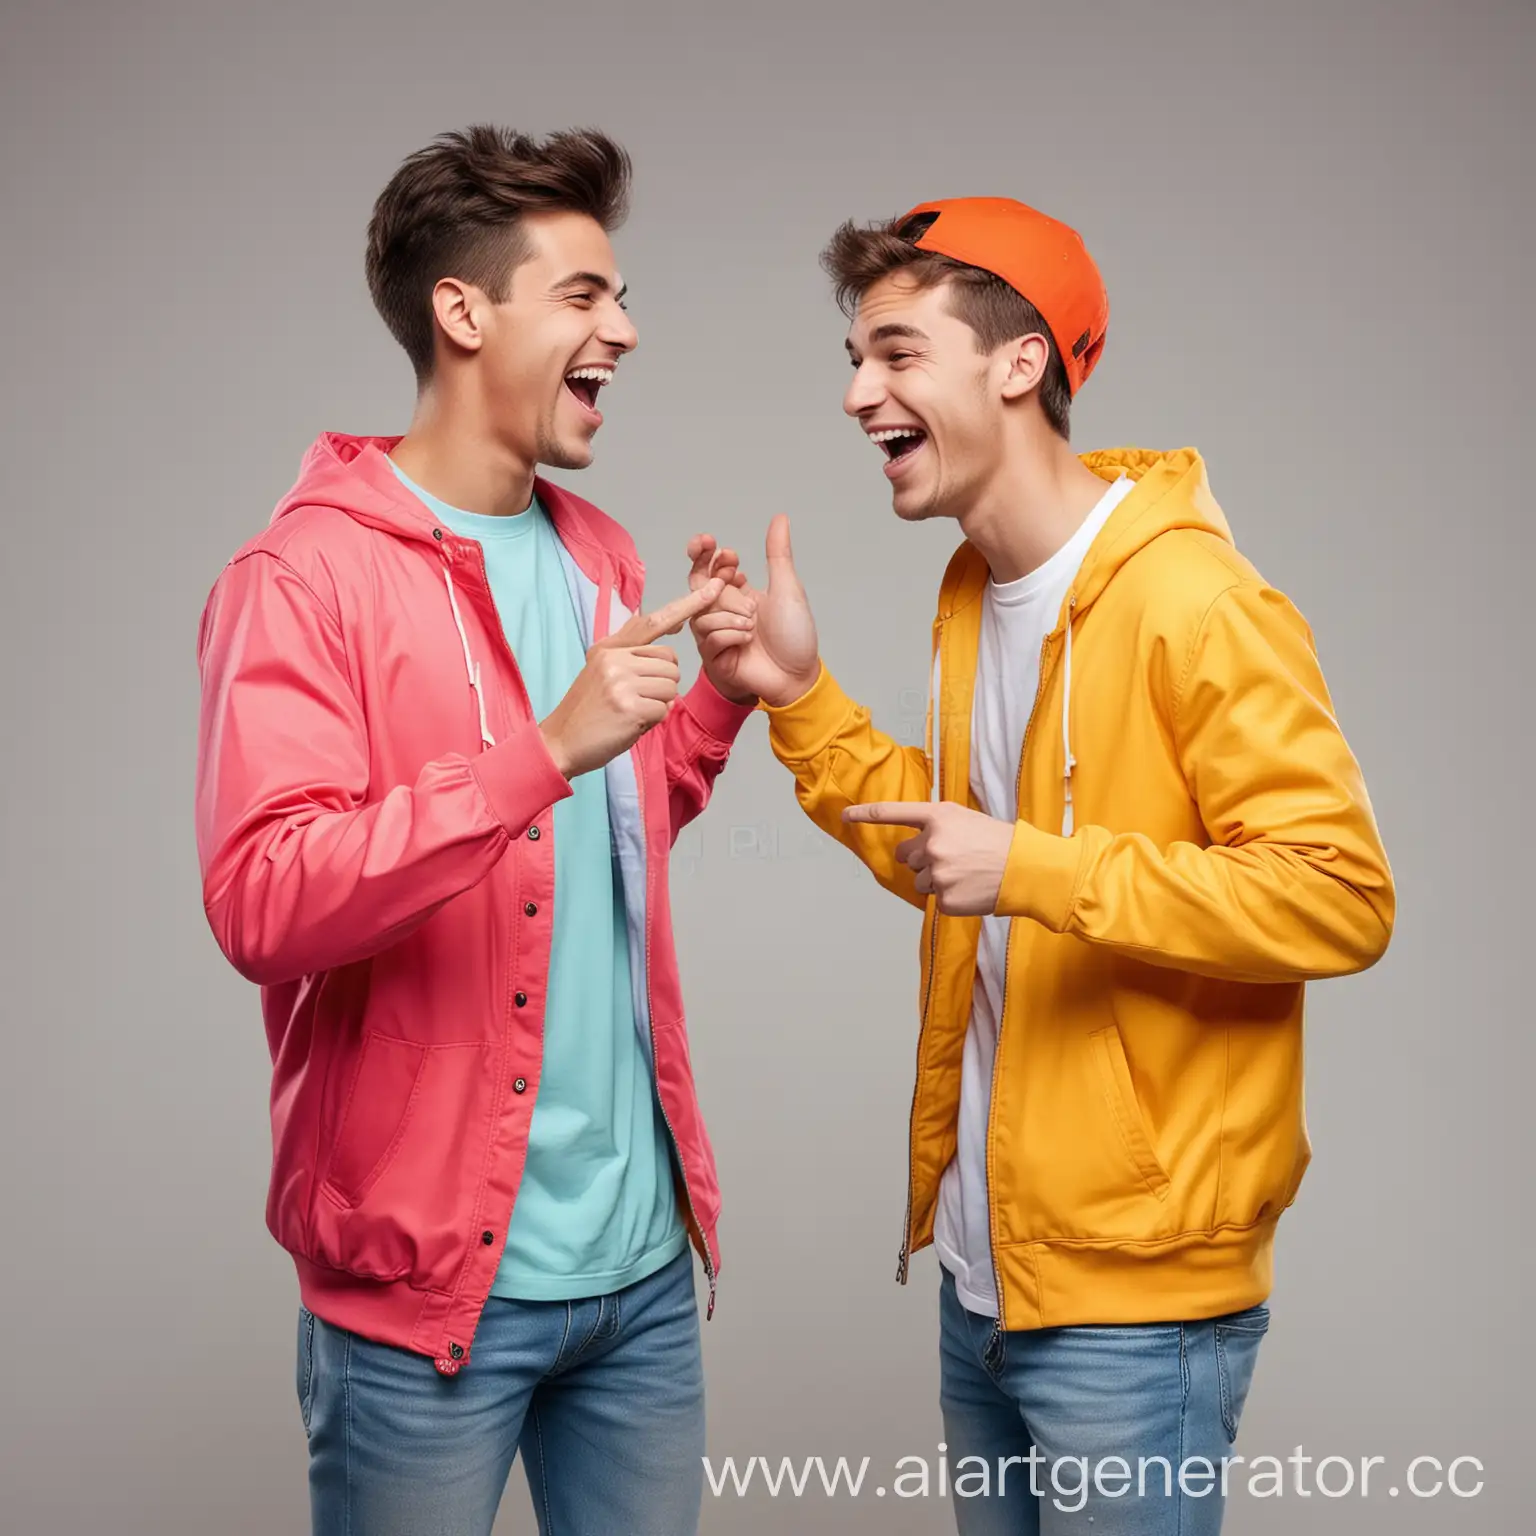 два молодых человека разговаривают друг с другом, активно жестикулируют и смеются. Они одеты в яркую одежду. Без фона